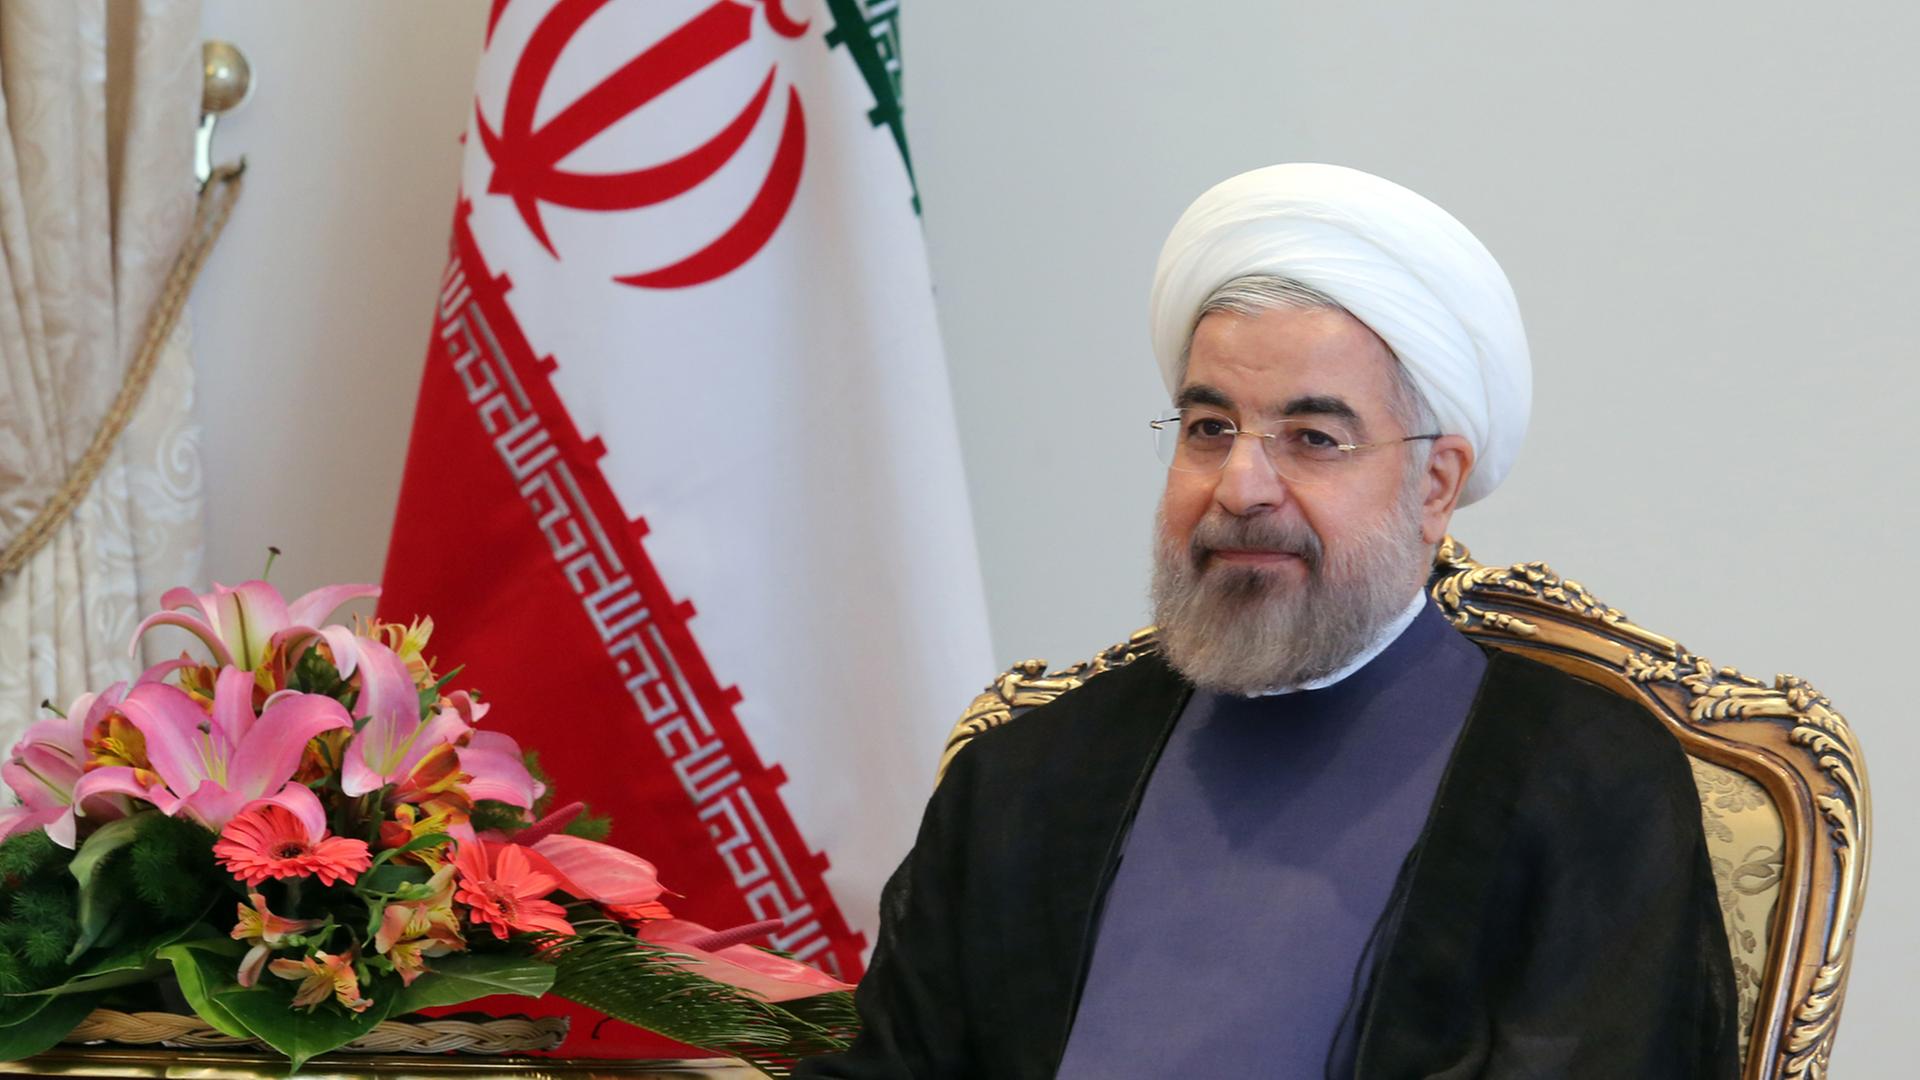 Der iranische Präsident Hassan Rouhani bei einem Treffen mit einem südafrikanischen Minister im Juni 2014.